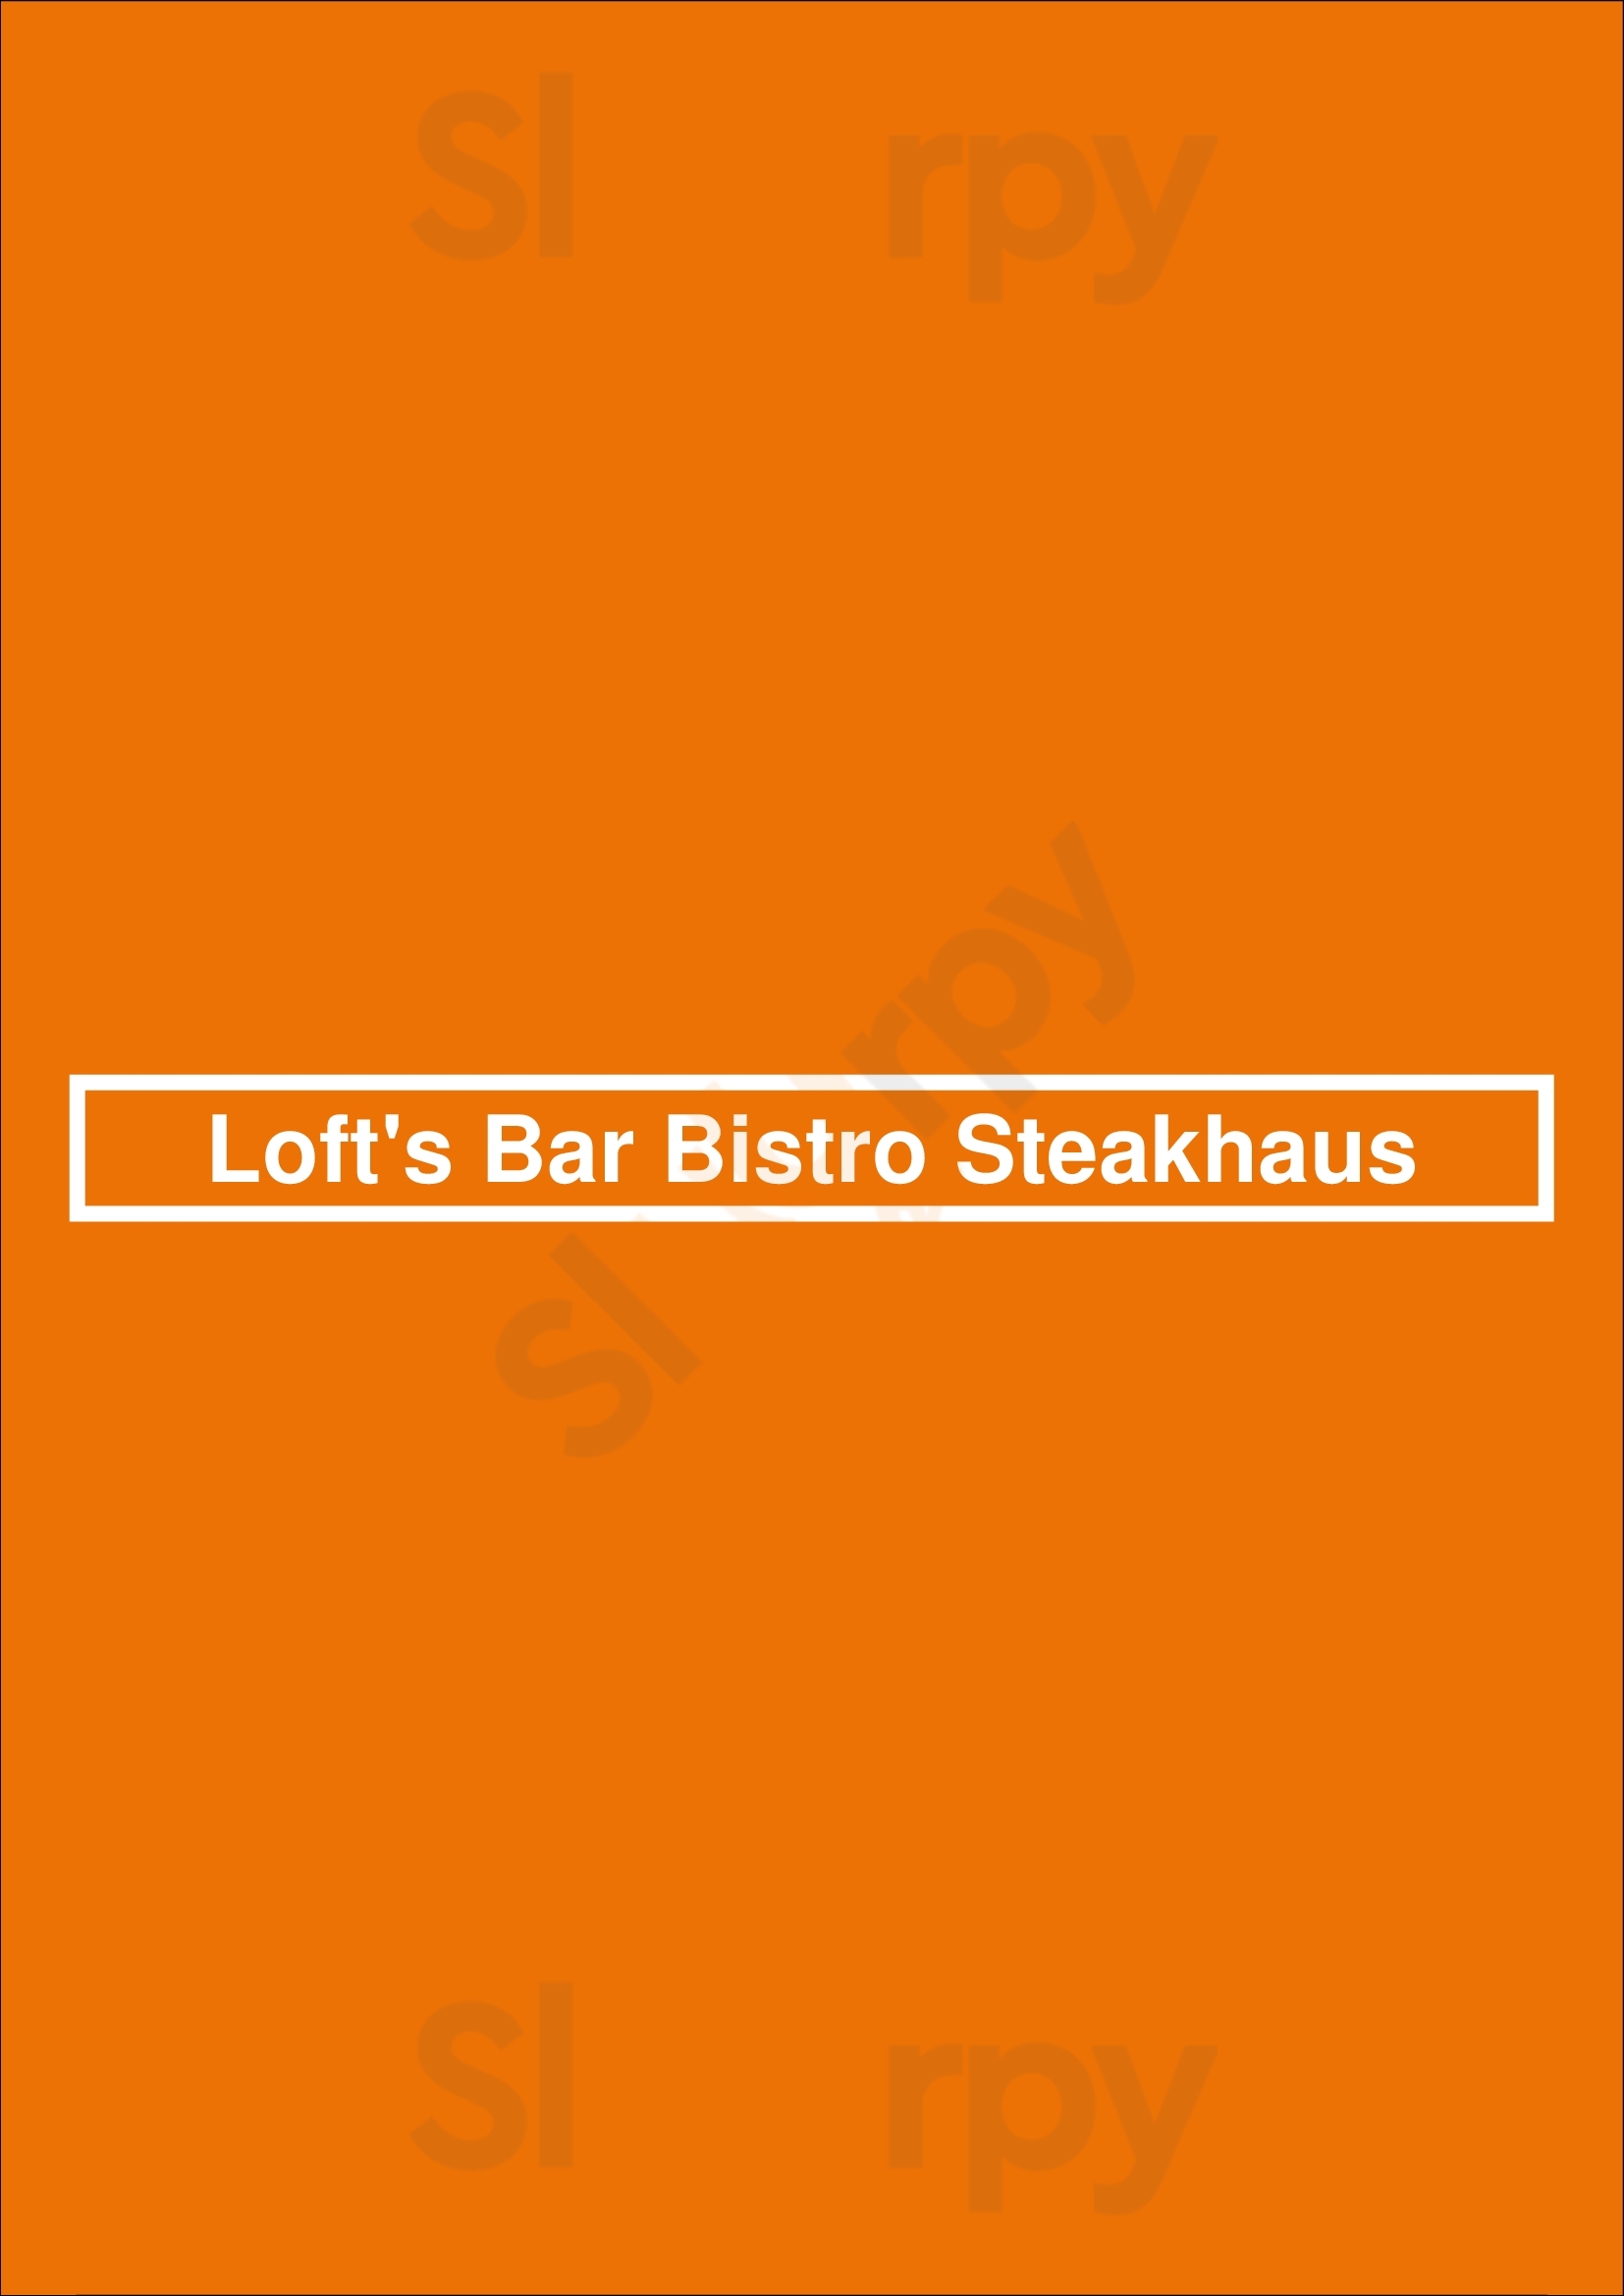 Loft's Bar Bistro Steakhaus Ingolstadt Menu - 1